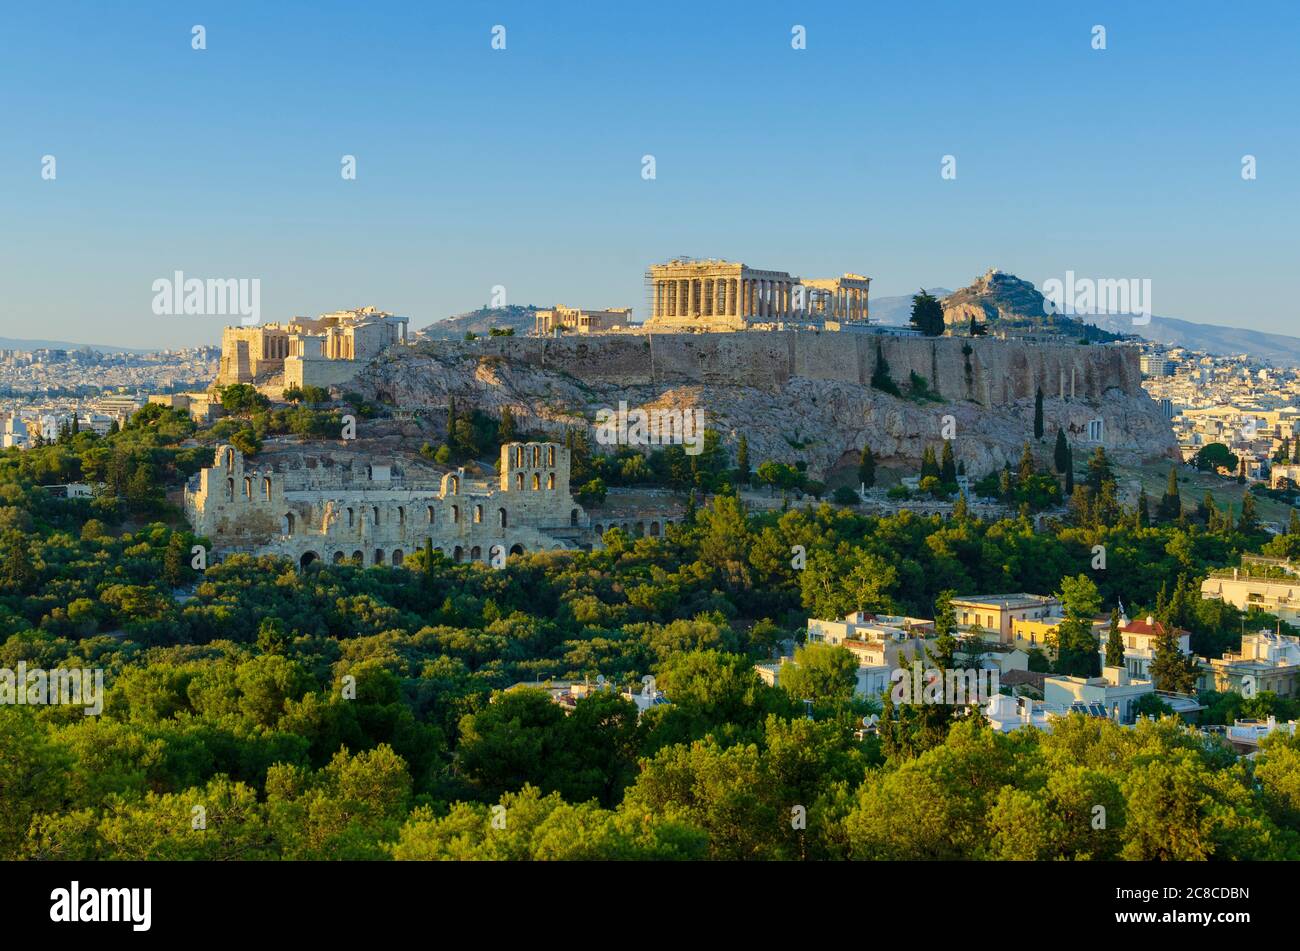 Tramonto vista generale del Partenone e dell'antica Acropoli di Atene Grecia con l'Odeon di Erode l'Attico in primo piano - Foto: Geopix Foto Stock